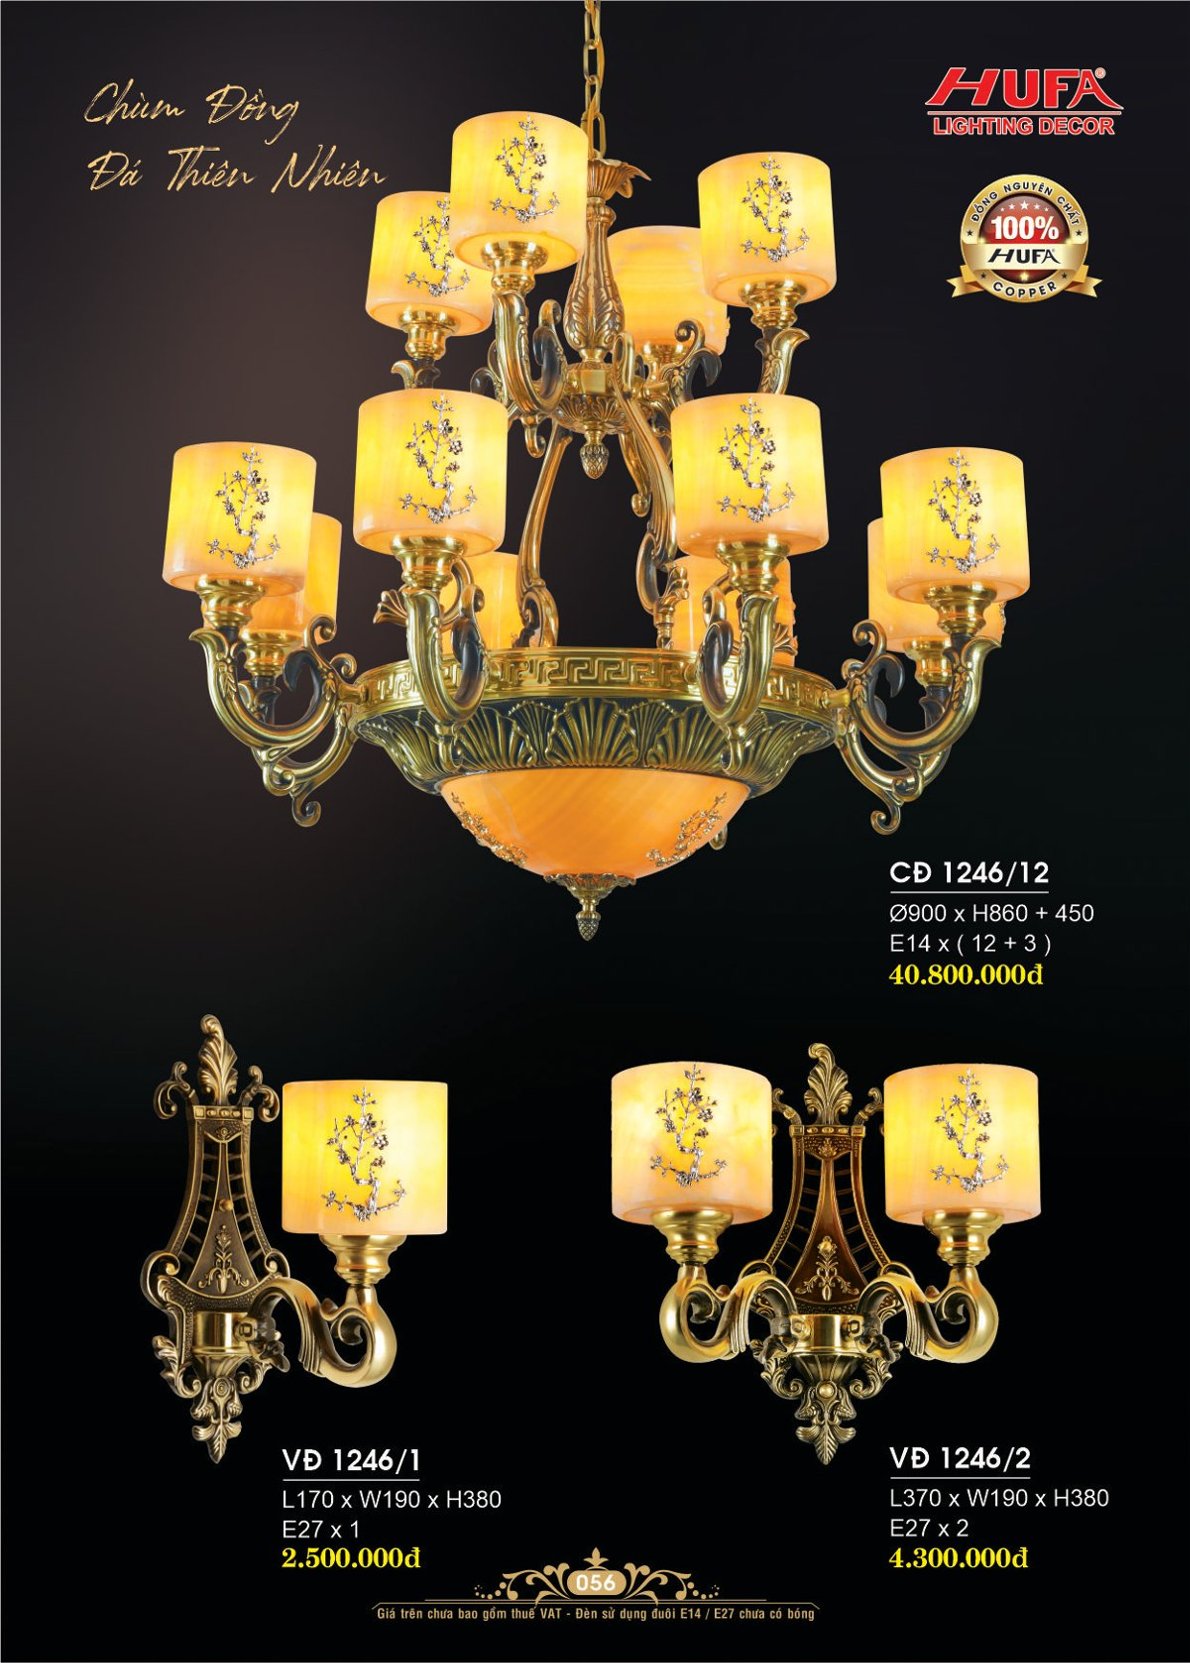 Đèn chùm đồng nguyên chất, đèn trang trí Hufa CĐ 1088/10+5 cao cấp, giá rẻ, bảo hành lâu dài, hỗ trợ lắp đặt, giao hàng toàn quốc. Đèn chùm đồng Hufa được bảo trì trọn đời.